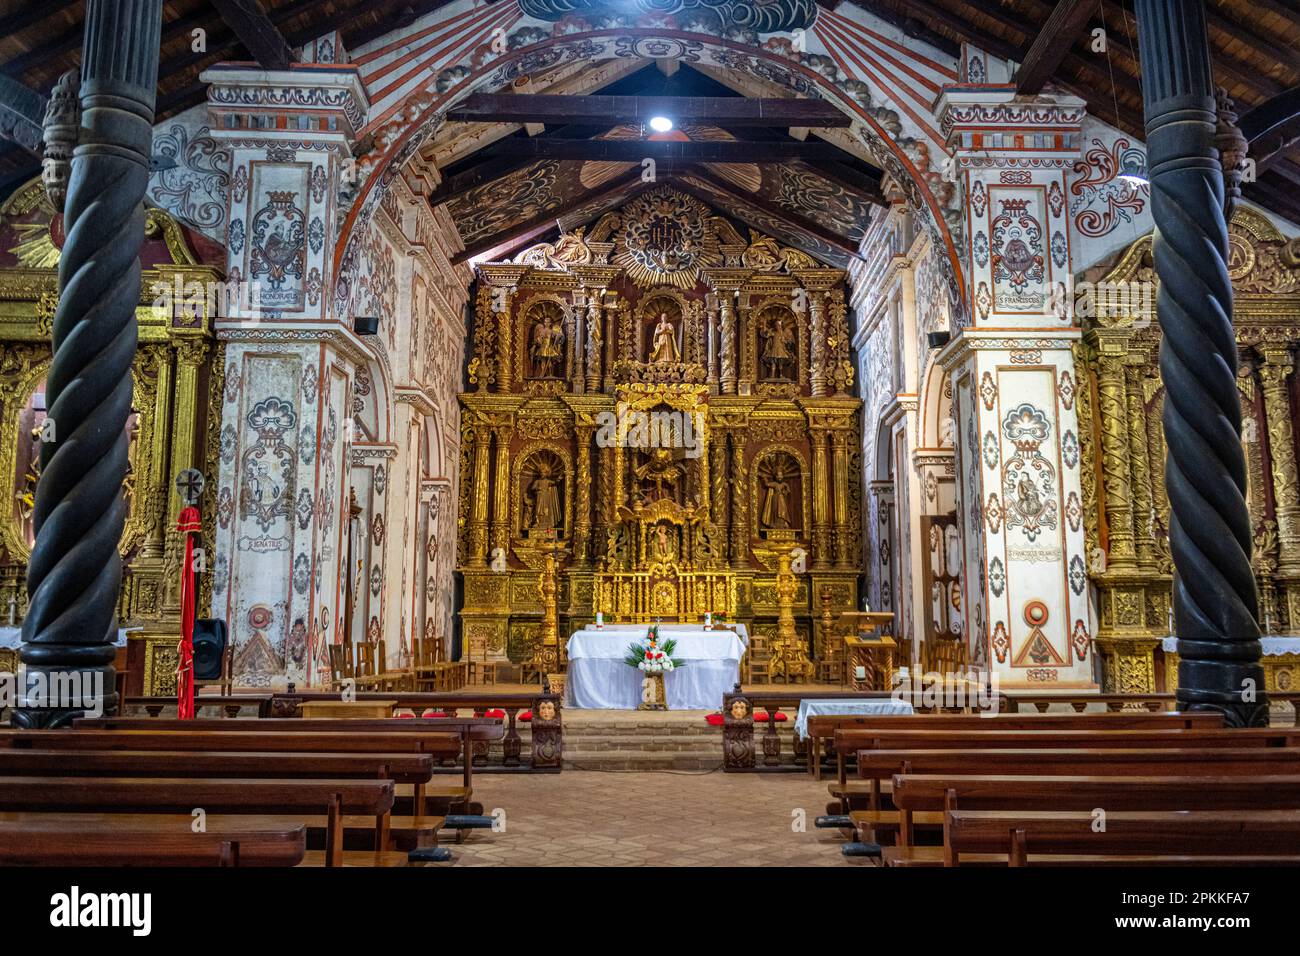 Intérieur de la mission San Miguel de Velasco, missions jésuites de Chiquitos, site du patrimoine mondial de l'UNESCO, département de Santa Cruz, Bolivie, Amérique du Sud Banque D'Images